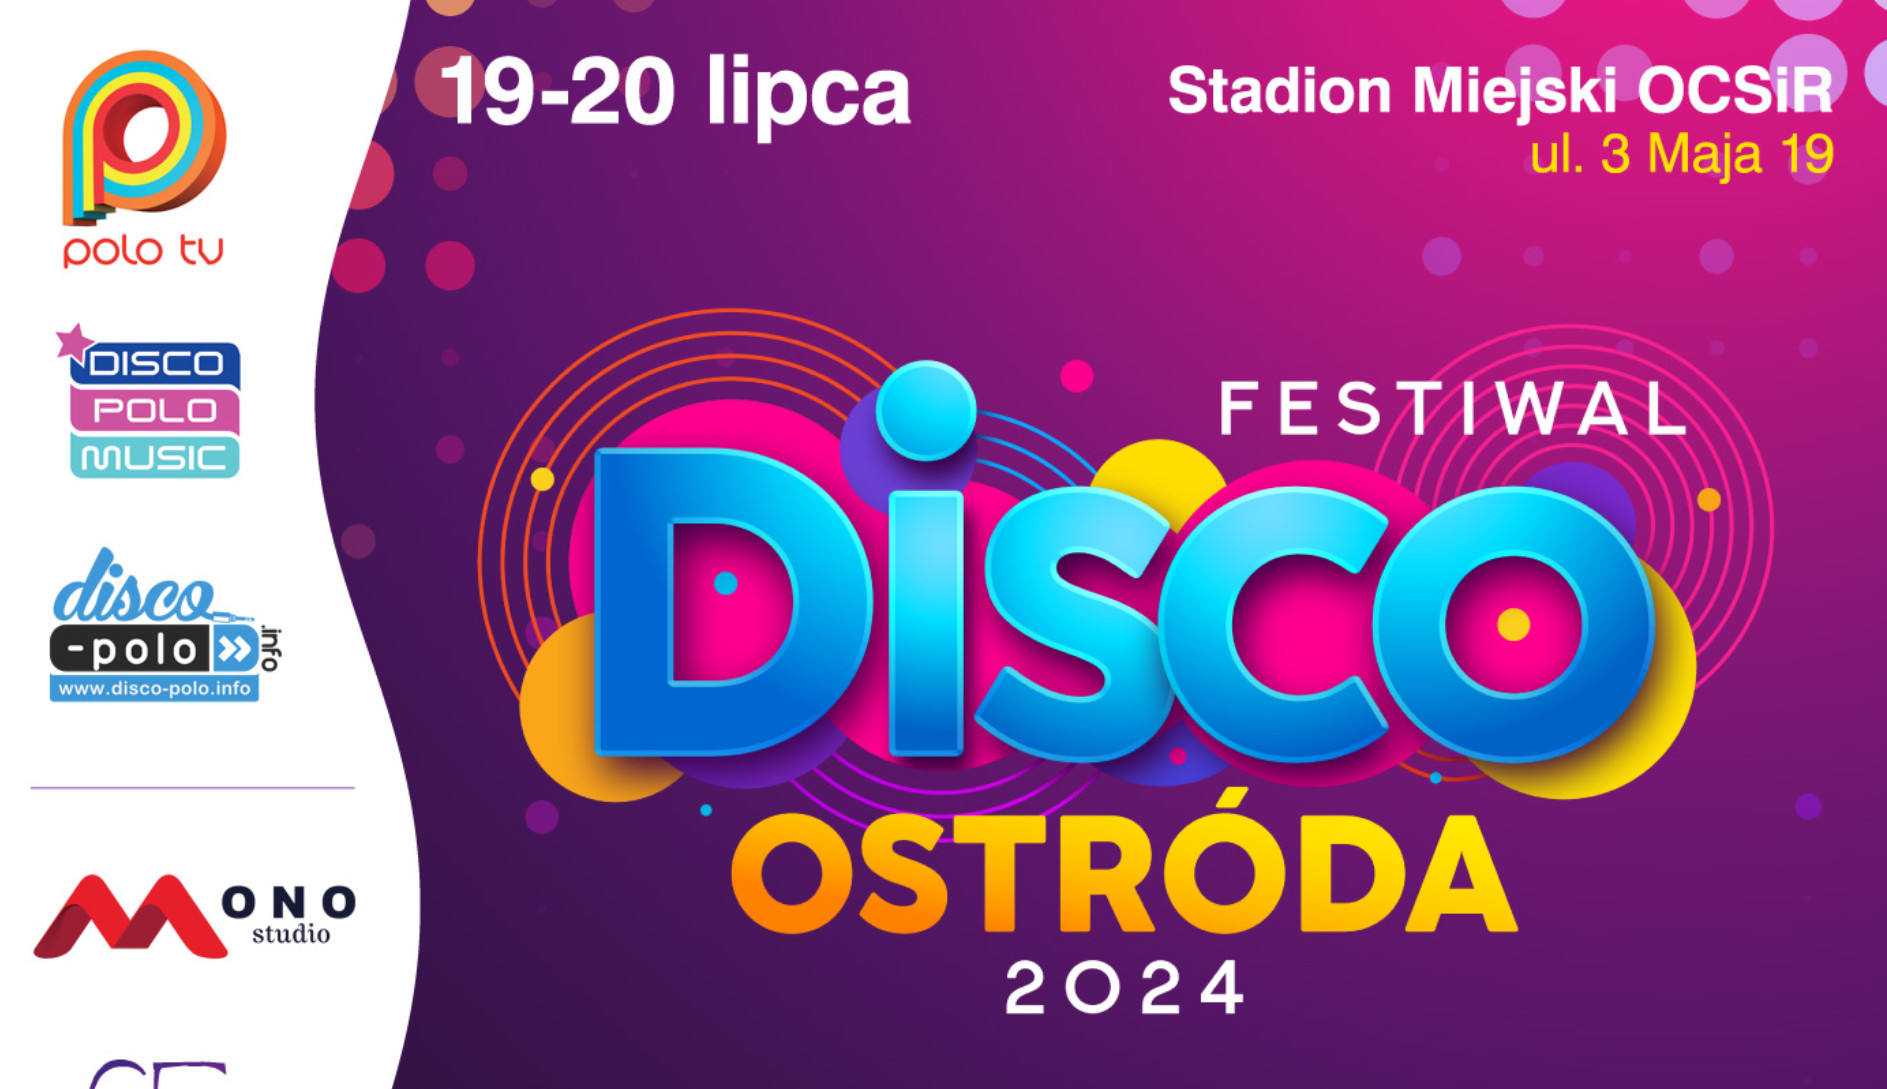 Ostatnie chwile! Festiwal Disco Ostróda 2024 – kończą się bilety na wielki festiwal disco polo! 